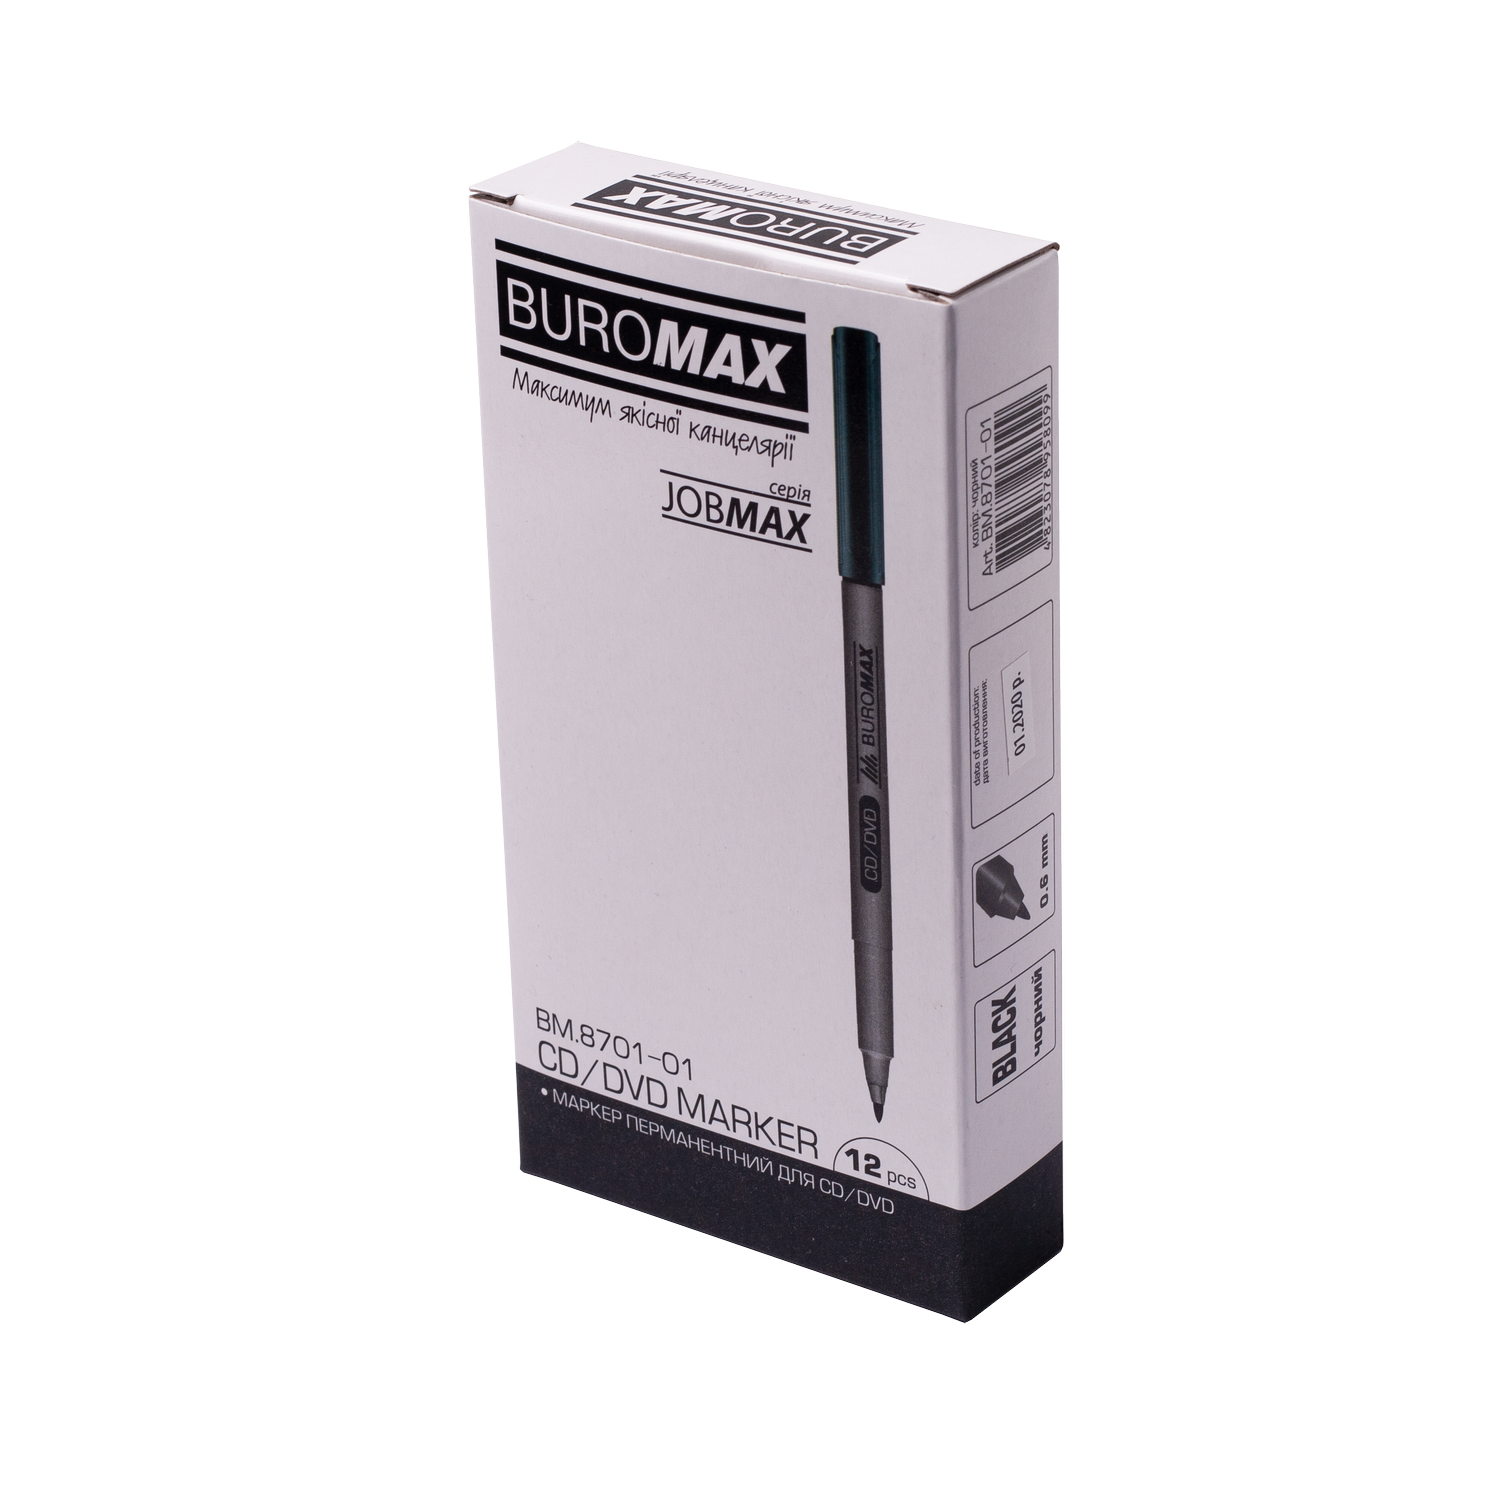 Маркер Buromax Jobmax водостойкий 0.6 мм черный (BM.8701-01) - фото 3